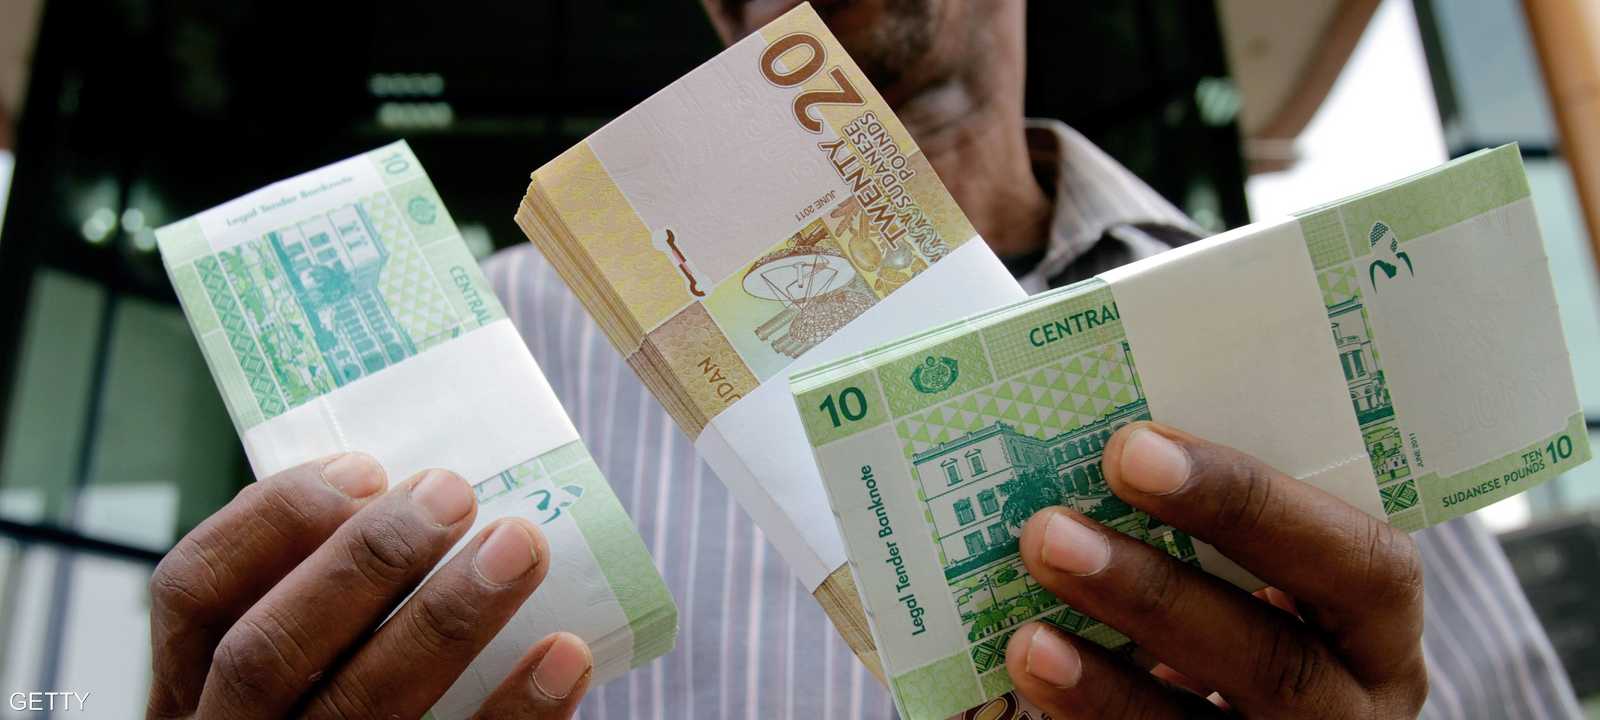 العملة السودانية خسرت الكثير من قيمتها في الآونة الأخيرة.